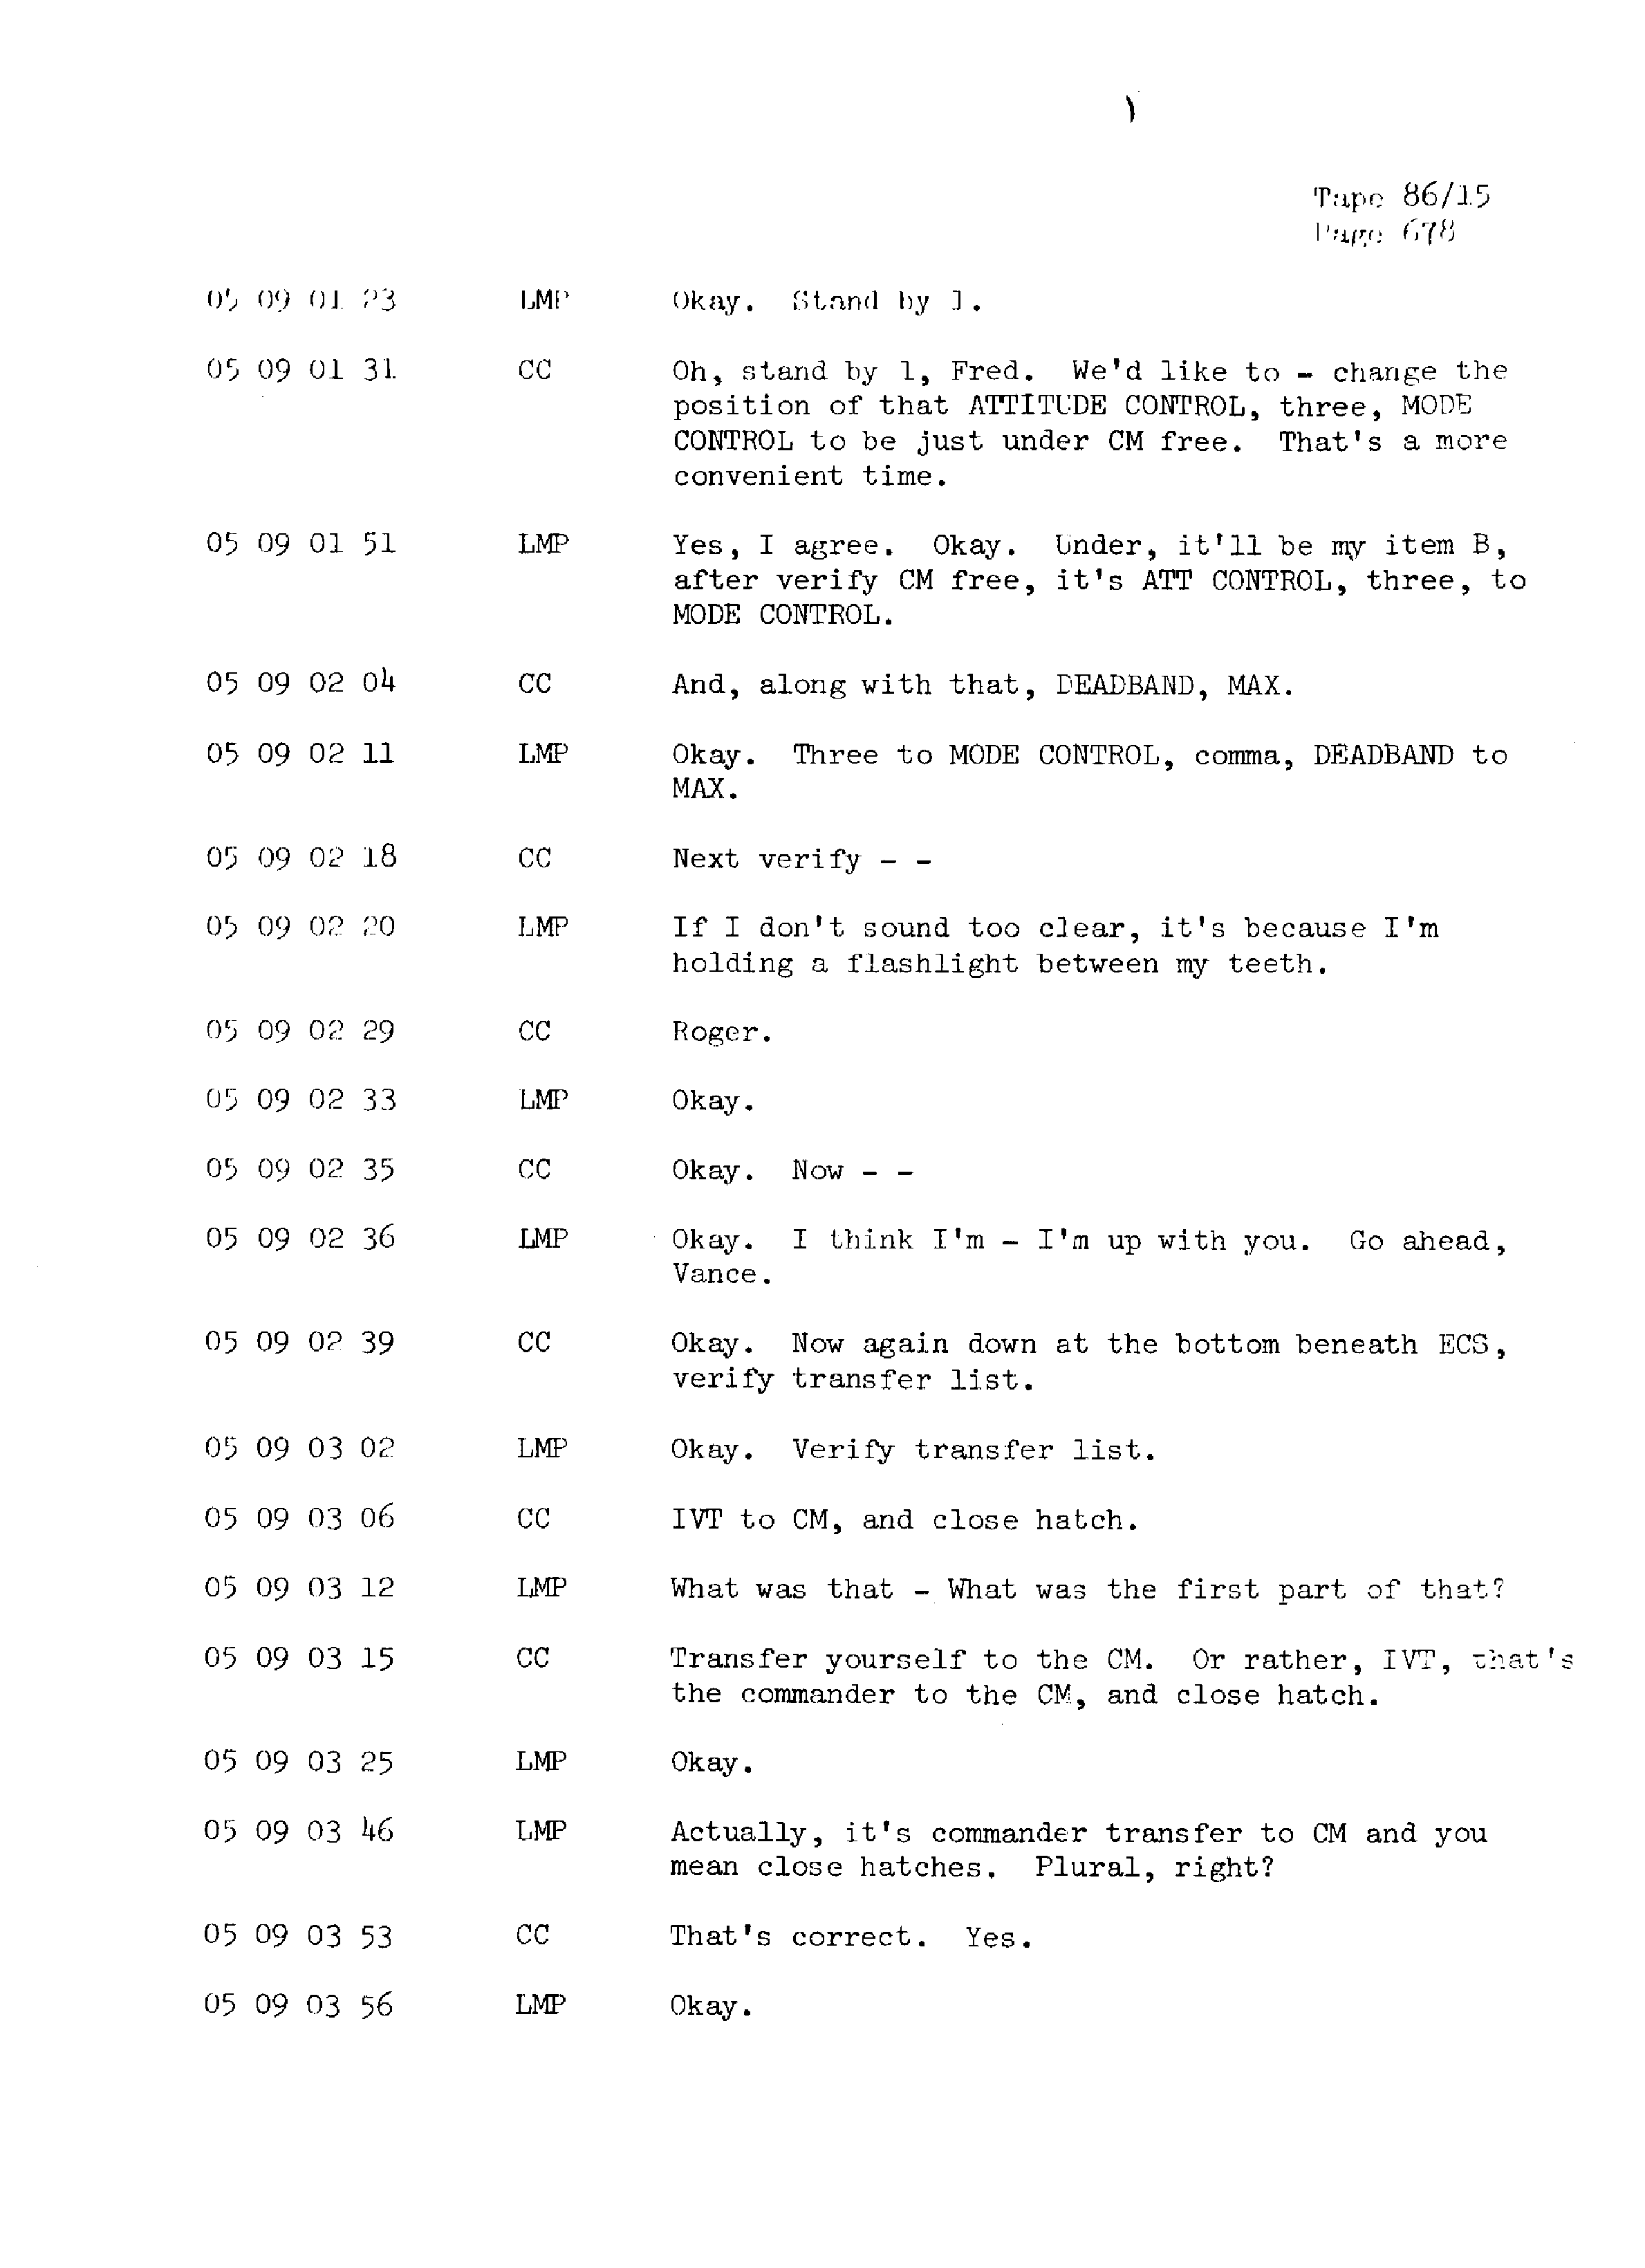 Page 685 of Apollo 13’s original transcript